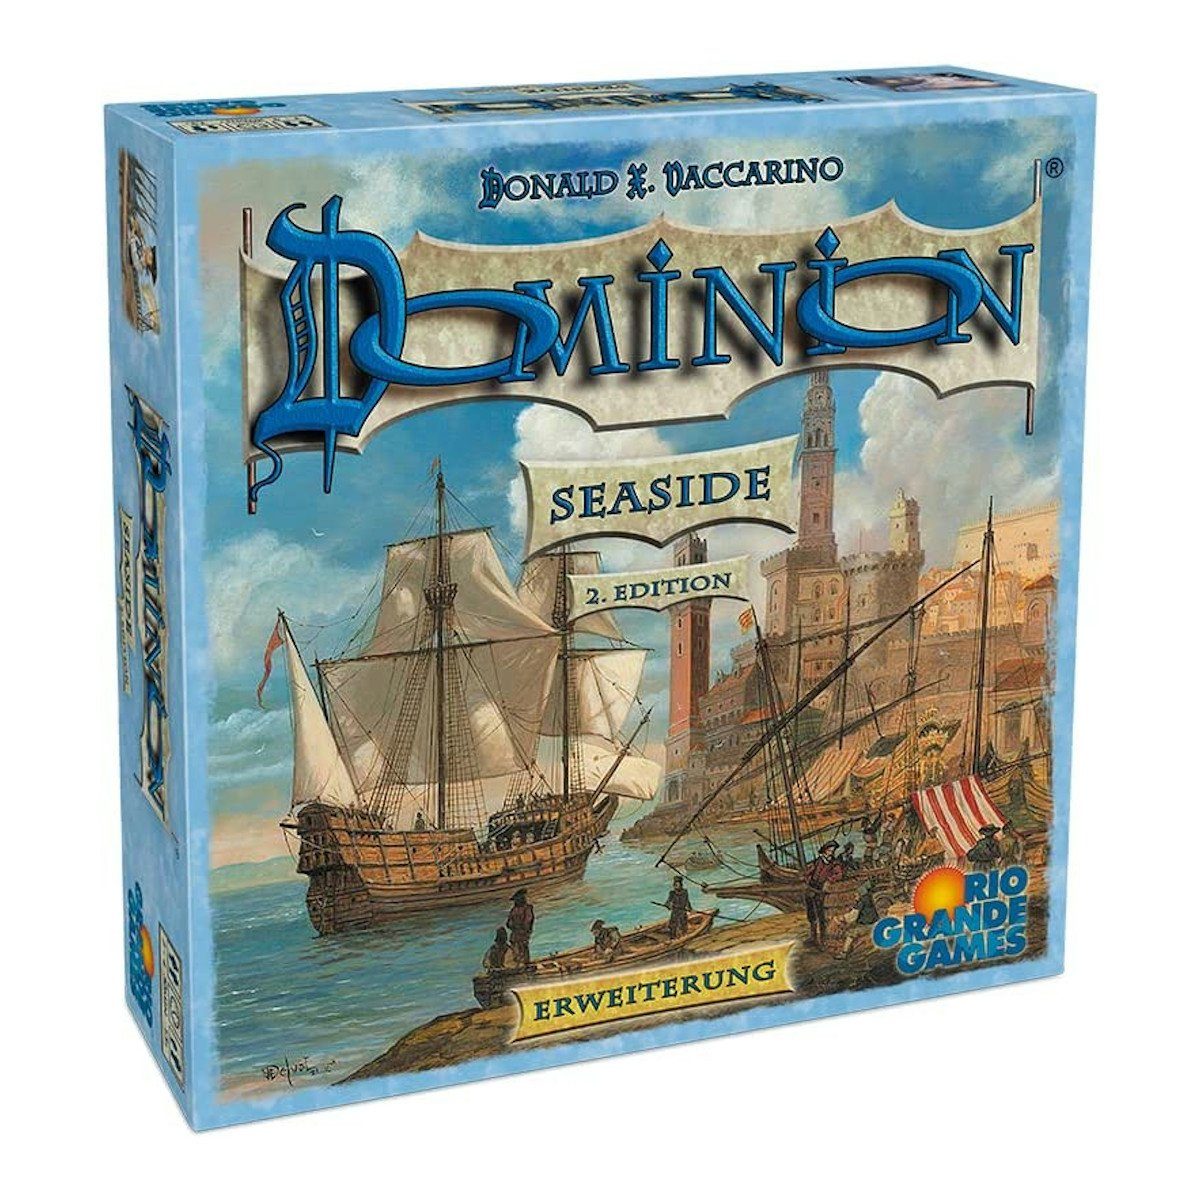 RGG Dominion Rio Grande - Spiel, Erweiterung (2. Pegasus Spiele Games - Edition) Seaside Brettspiel